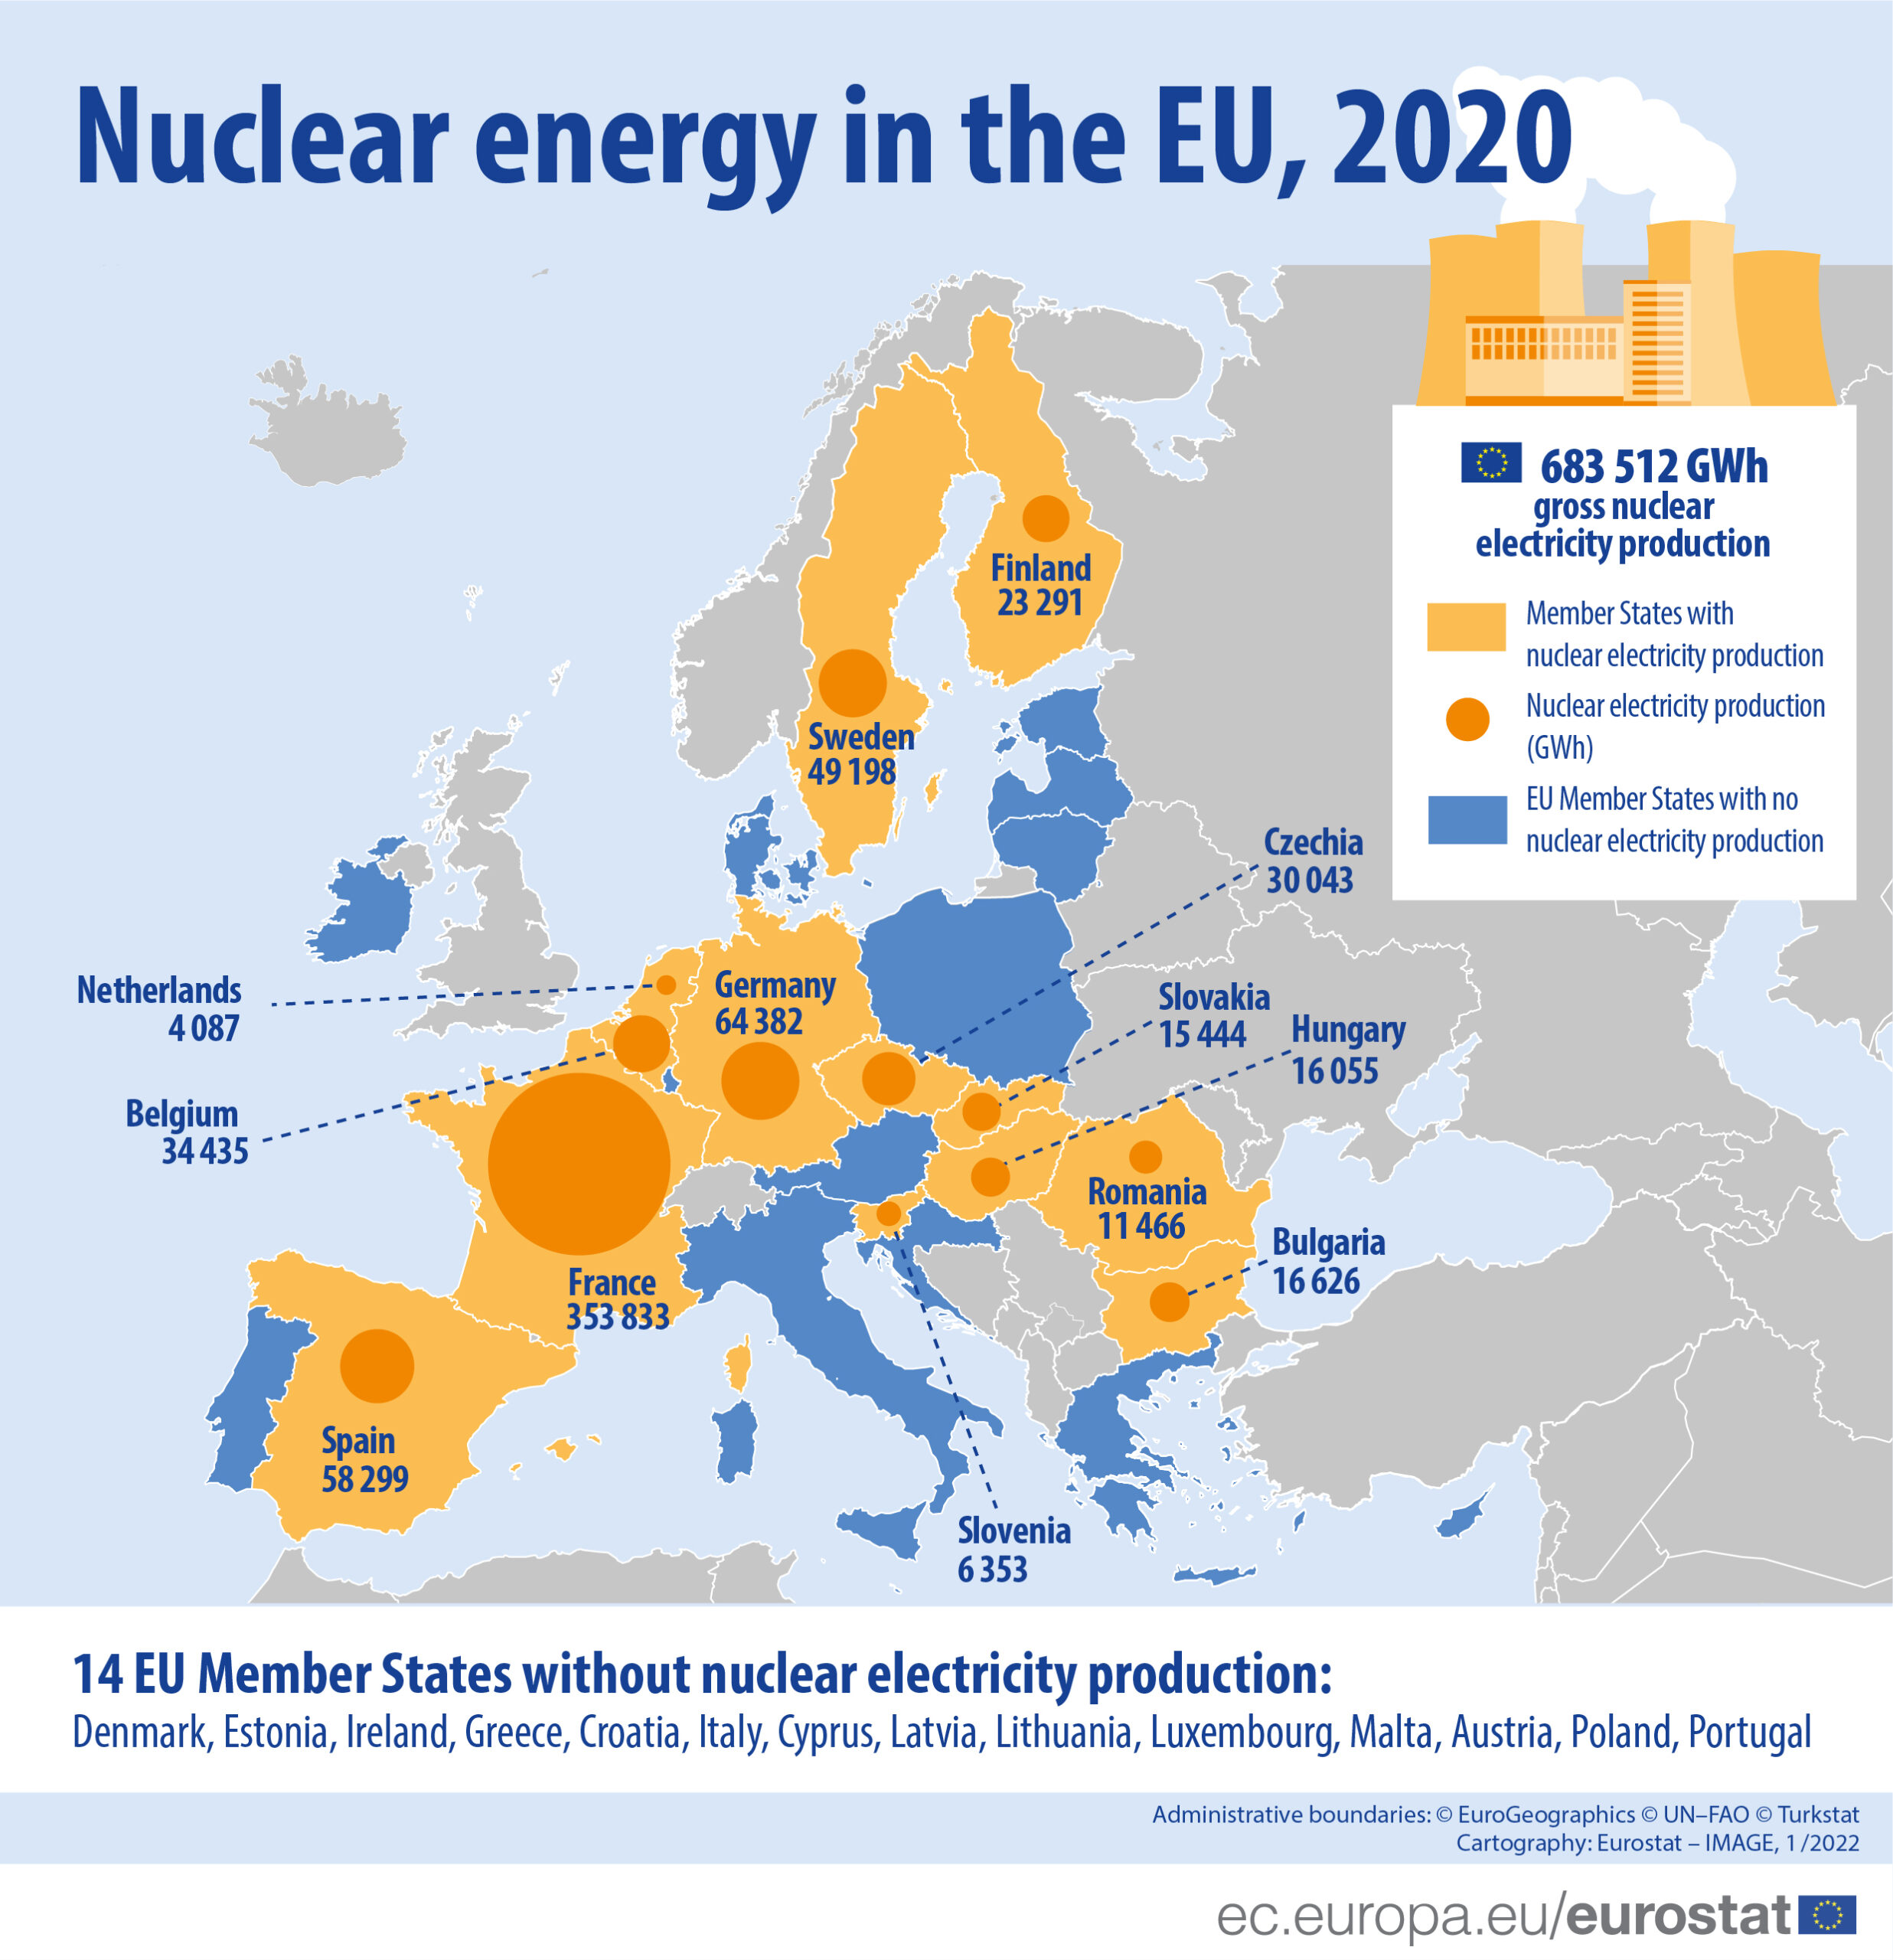 corrente elettrica nucleare prodotta in Europa nel 2020